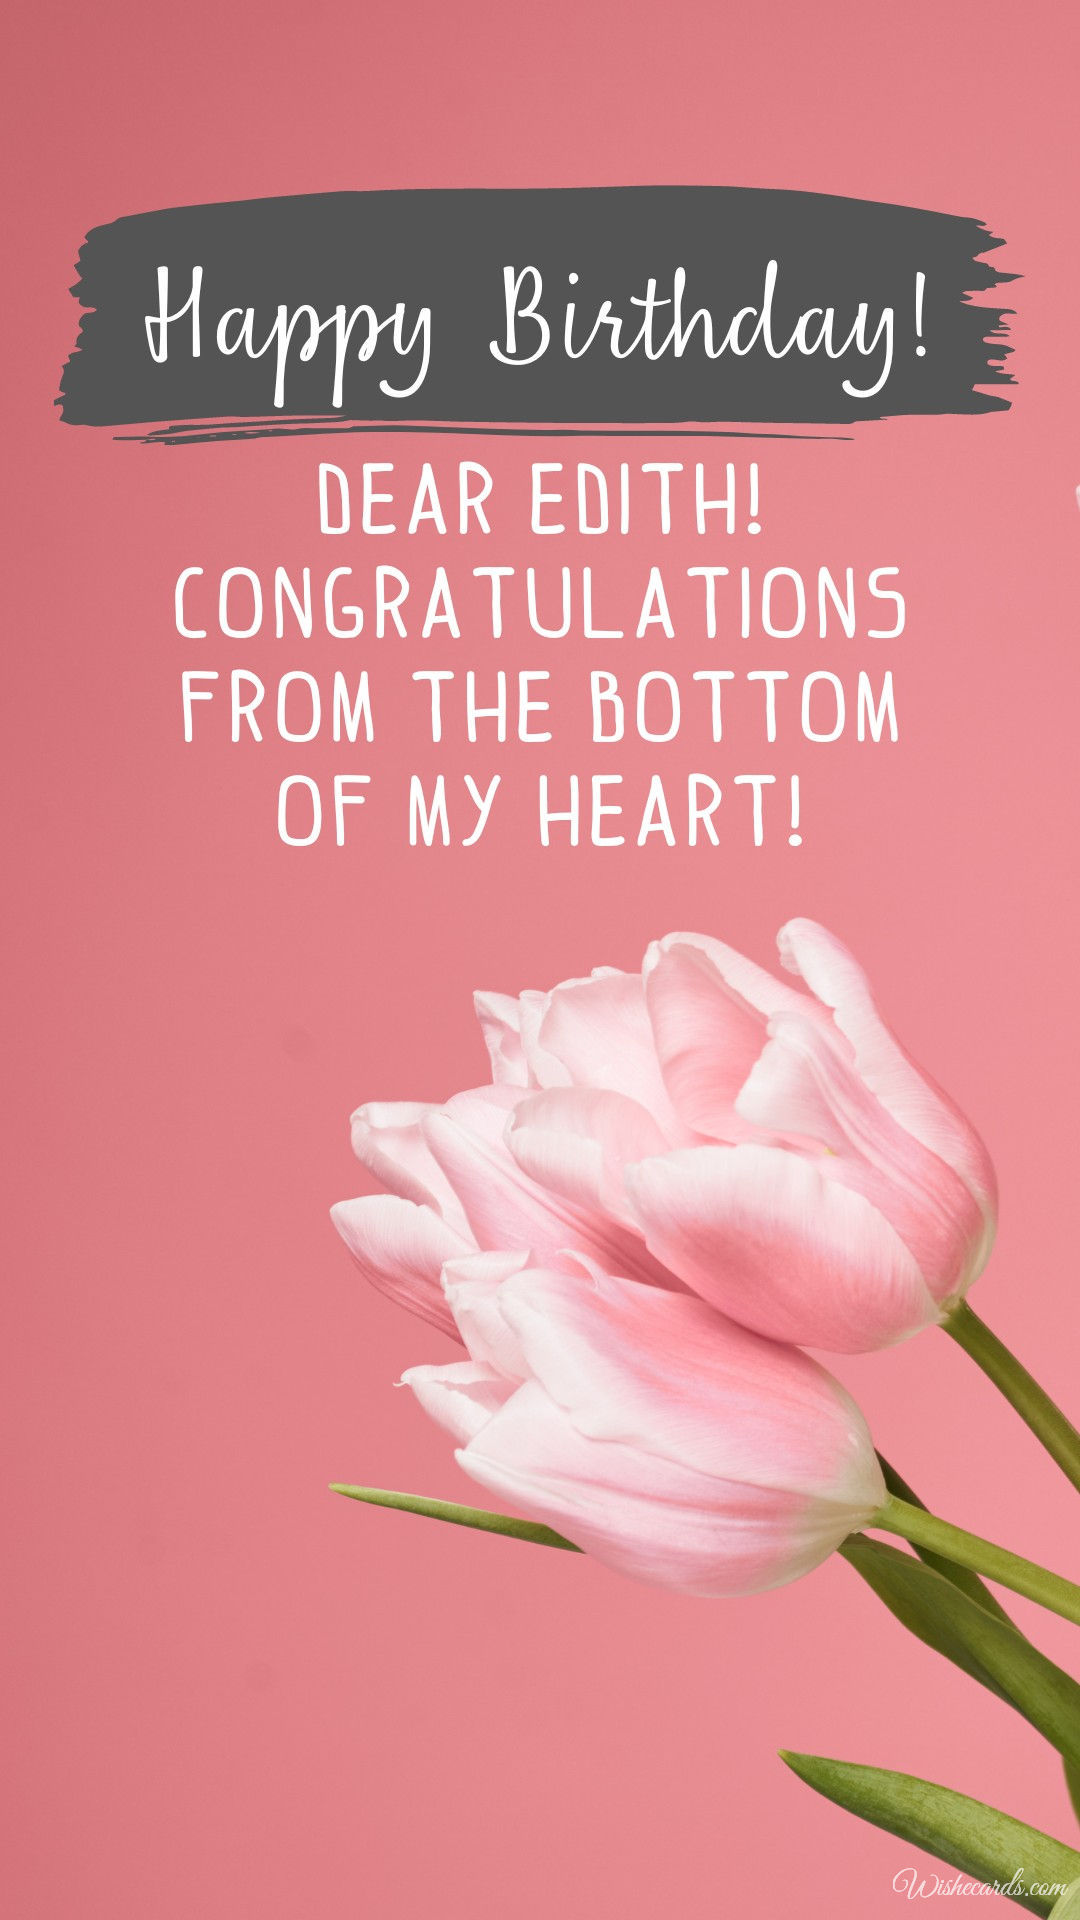 Happy Birthday Edith Image